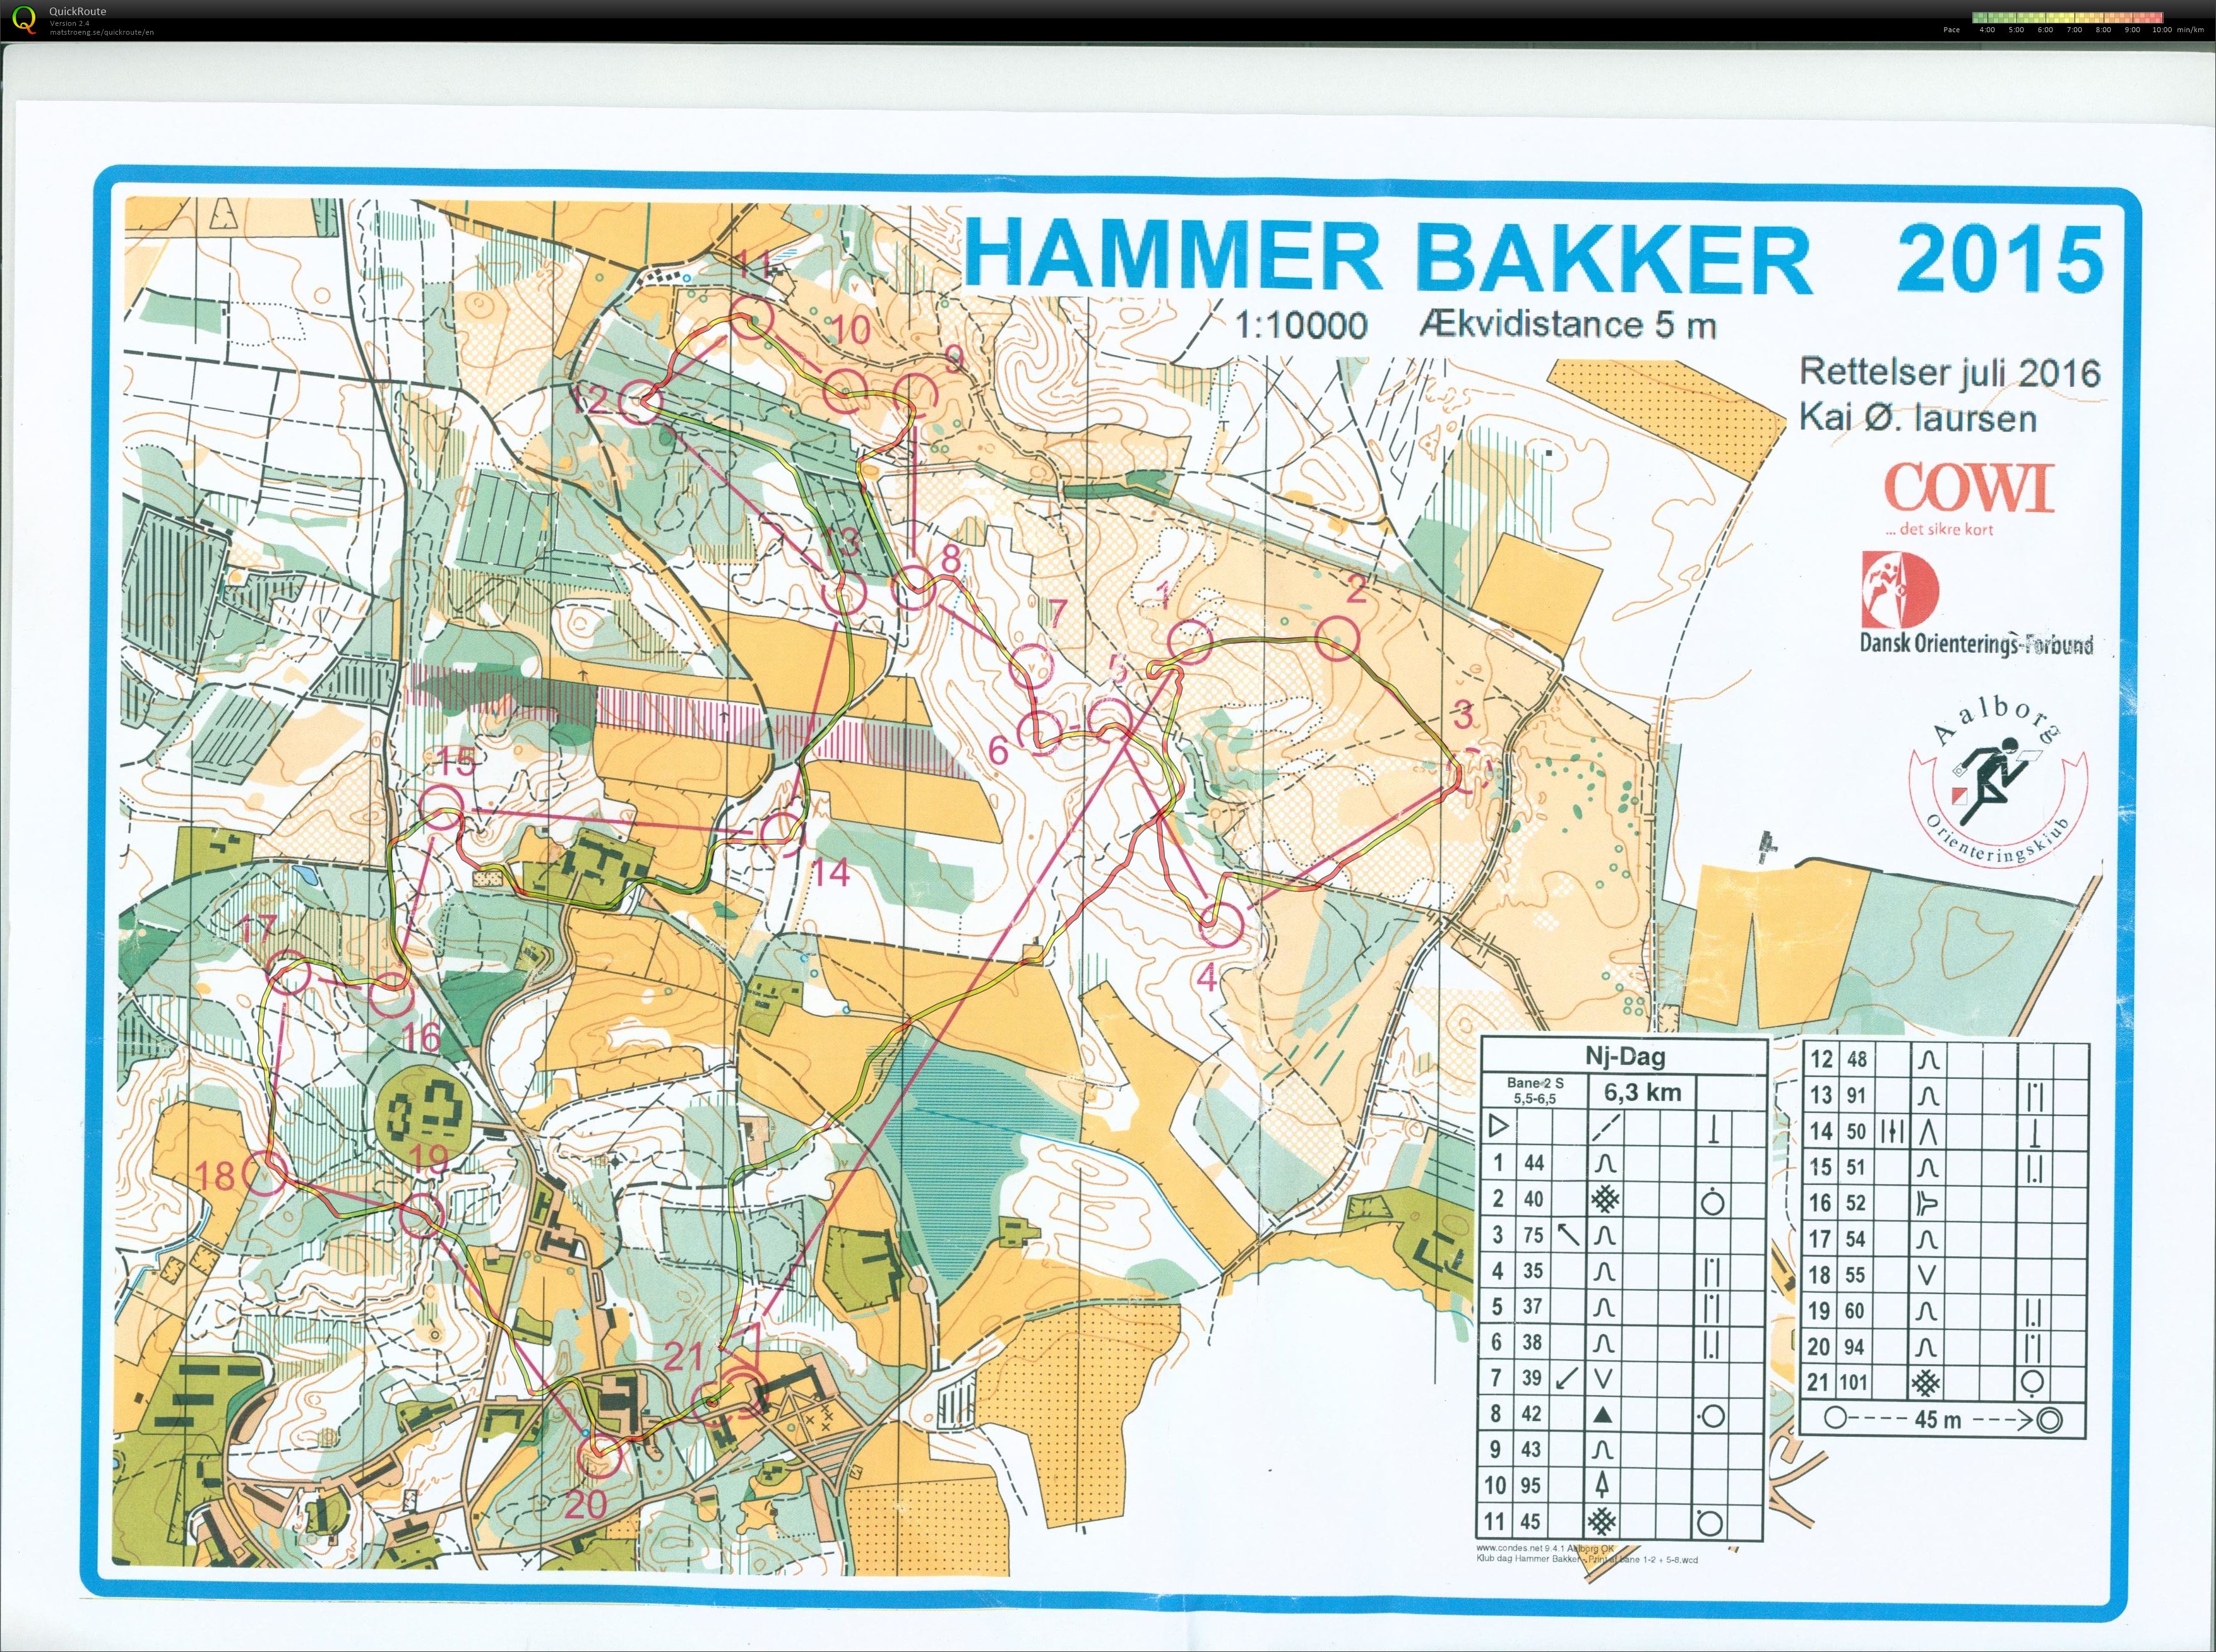 Hammer Bakker bane 2 Keld Gade (13.11.2016)